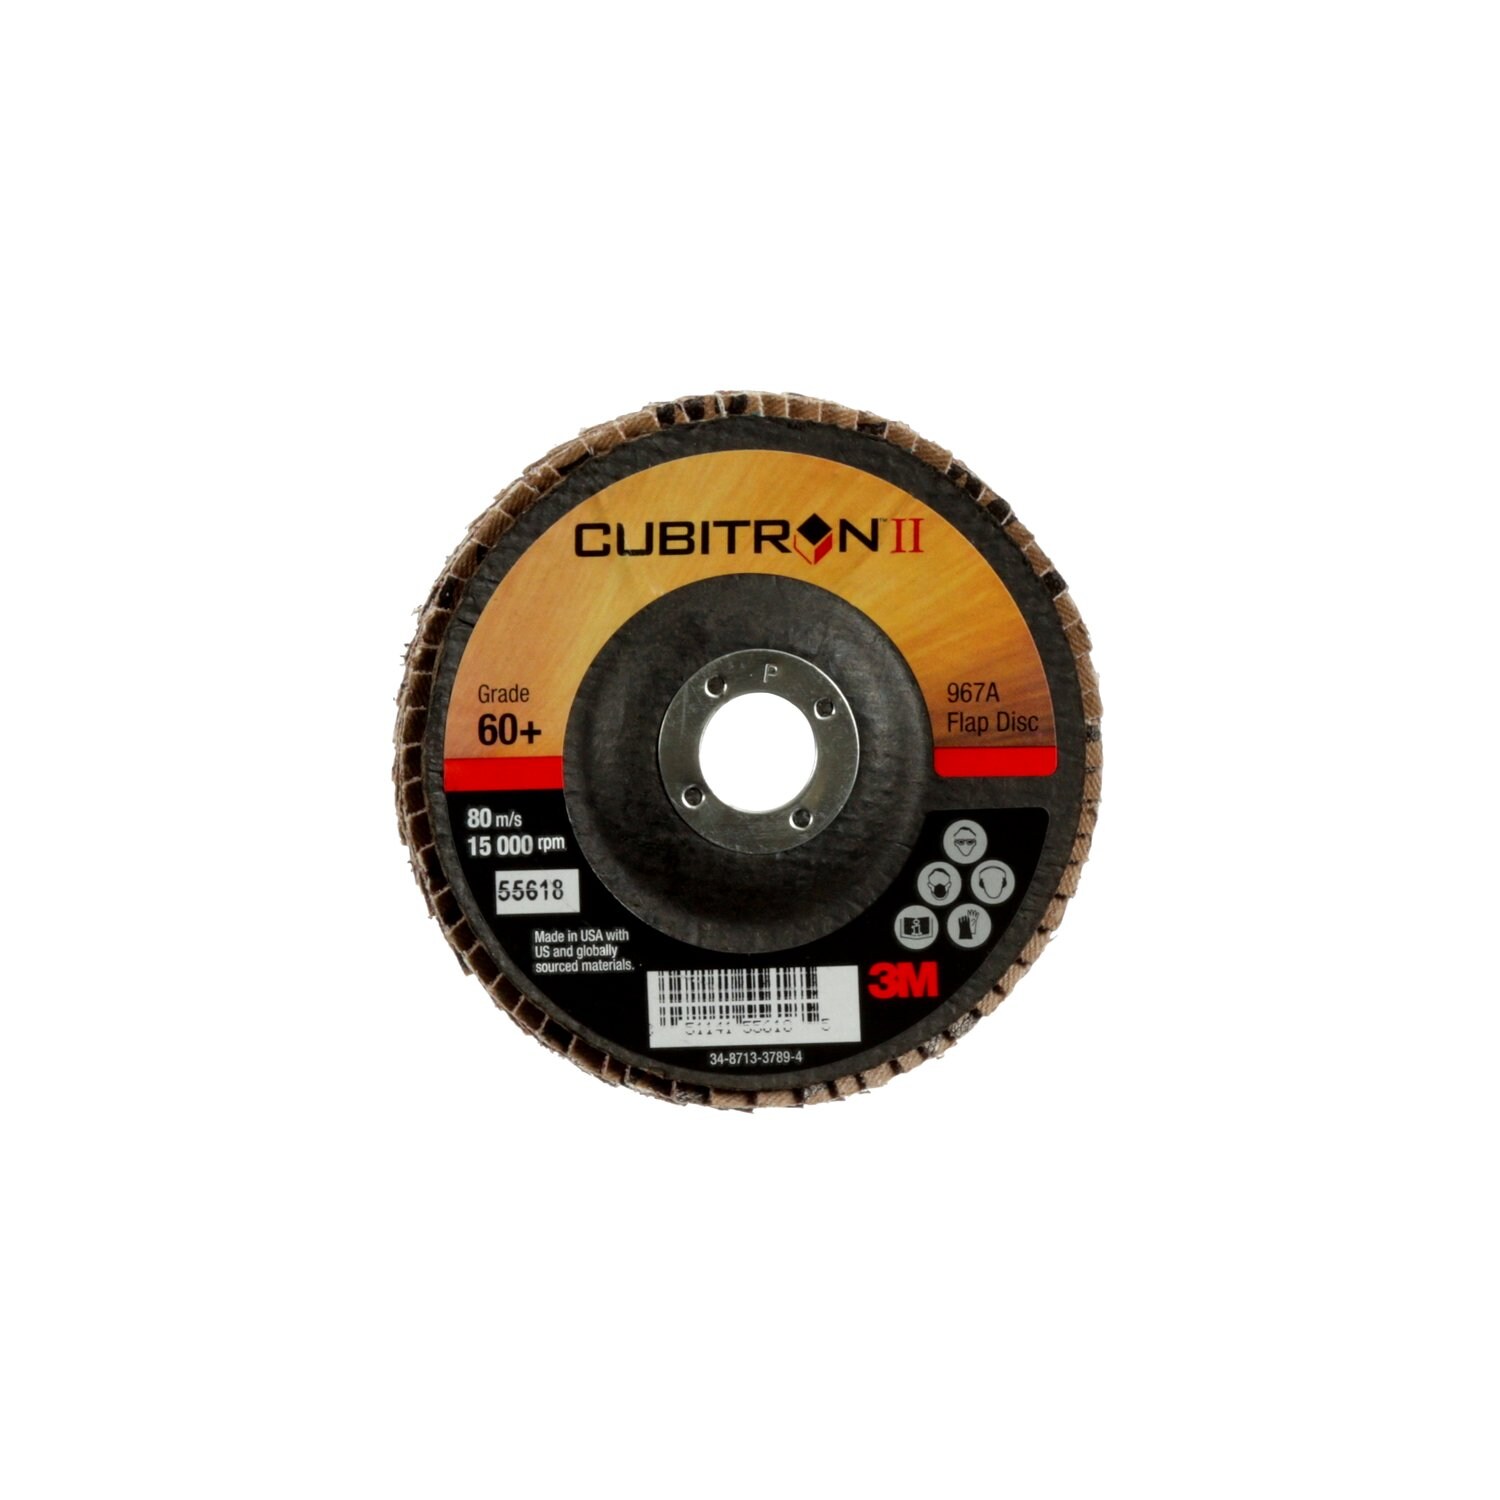 7100097650 - 3M Cubitron II Flap Disc 967A, 60+, T29, 4 in x 5/8 in, 10 ea/Case